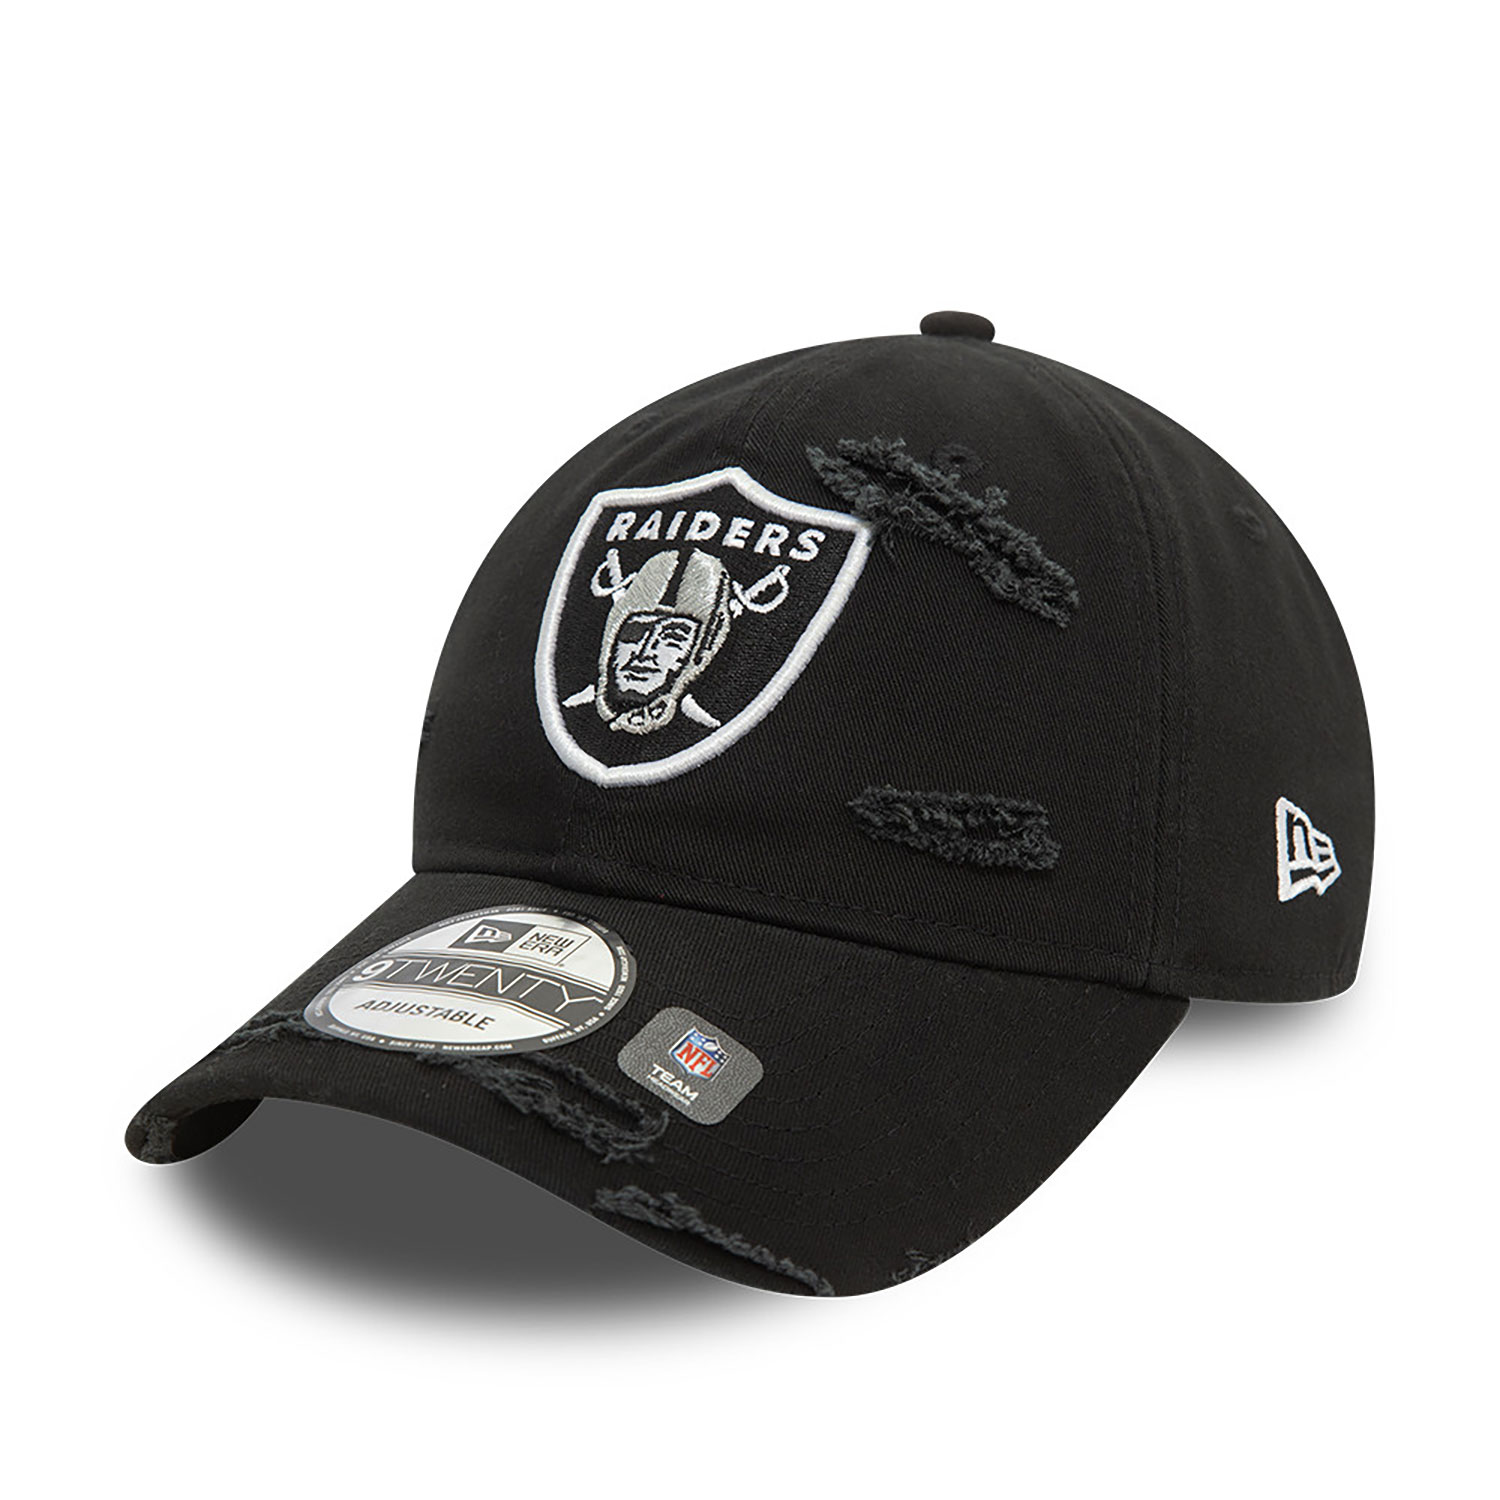 Las Vegas Raiders NFL Distressed Black 9TWENTY Adjustable Cap